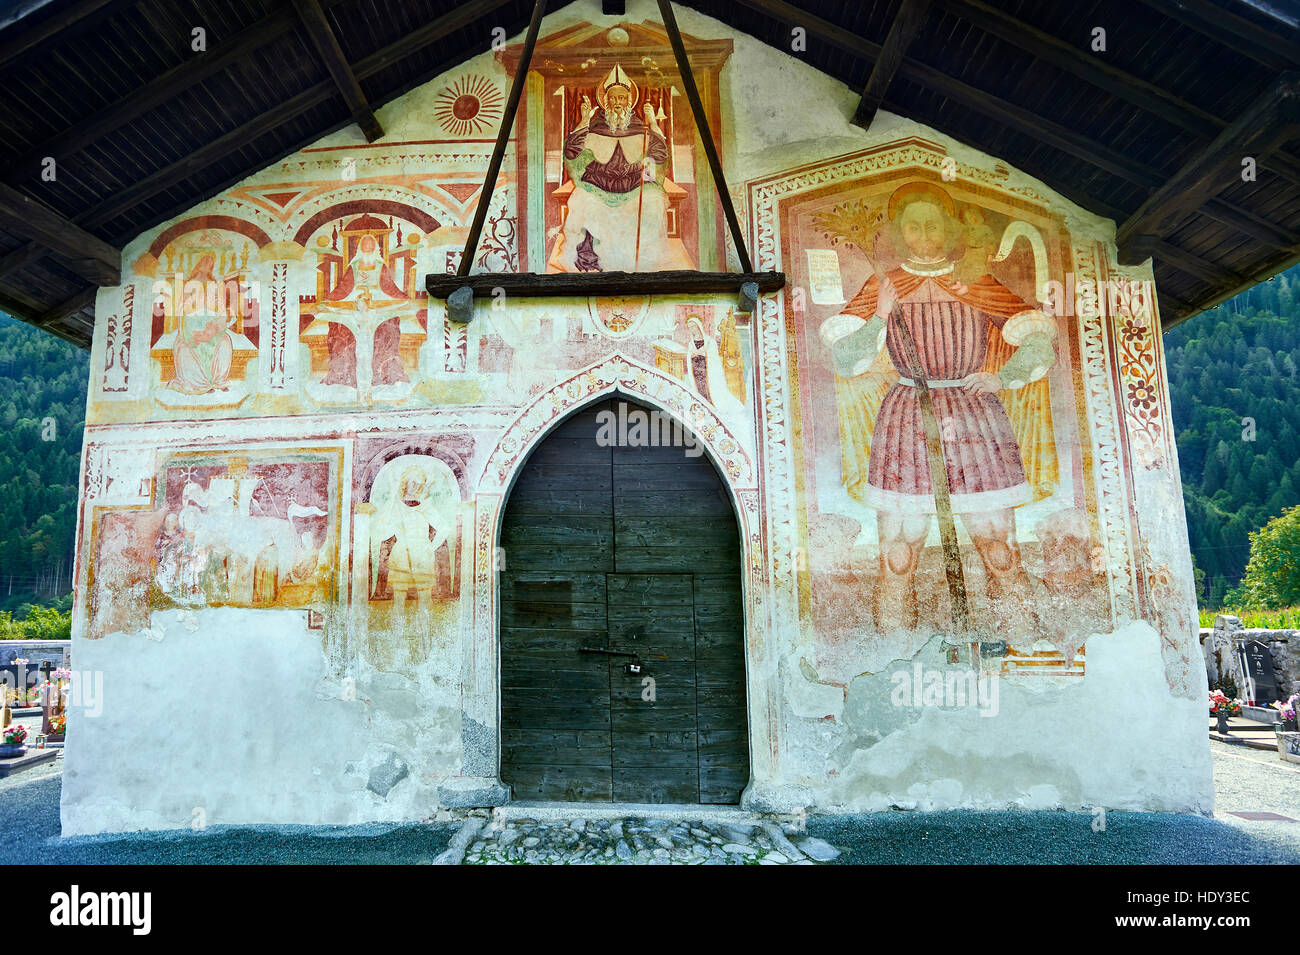 Peintures murales religieuses par Baschenis circa 1493 ( famille) sur l'extérieur de l'église gothique de San Antonio Abate, Pelugo, Province de Trento, Italie Banque D'Images